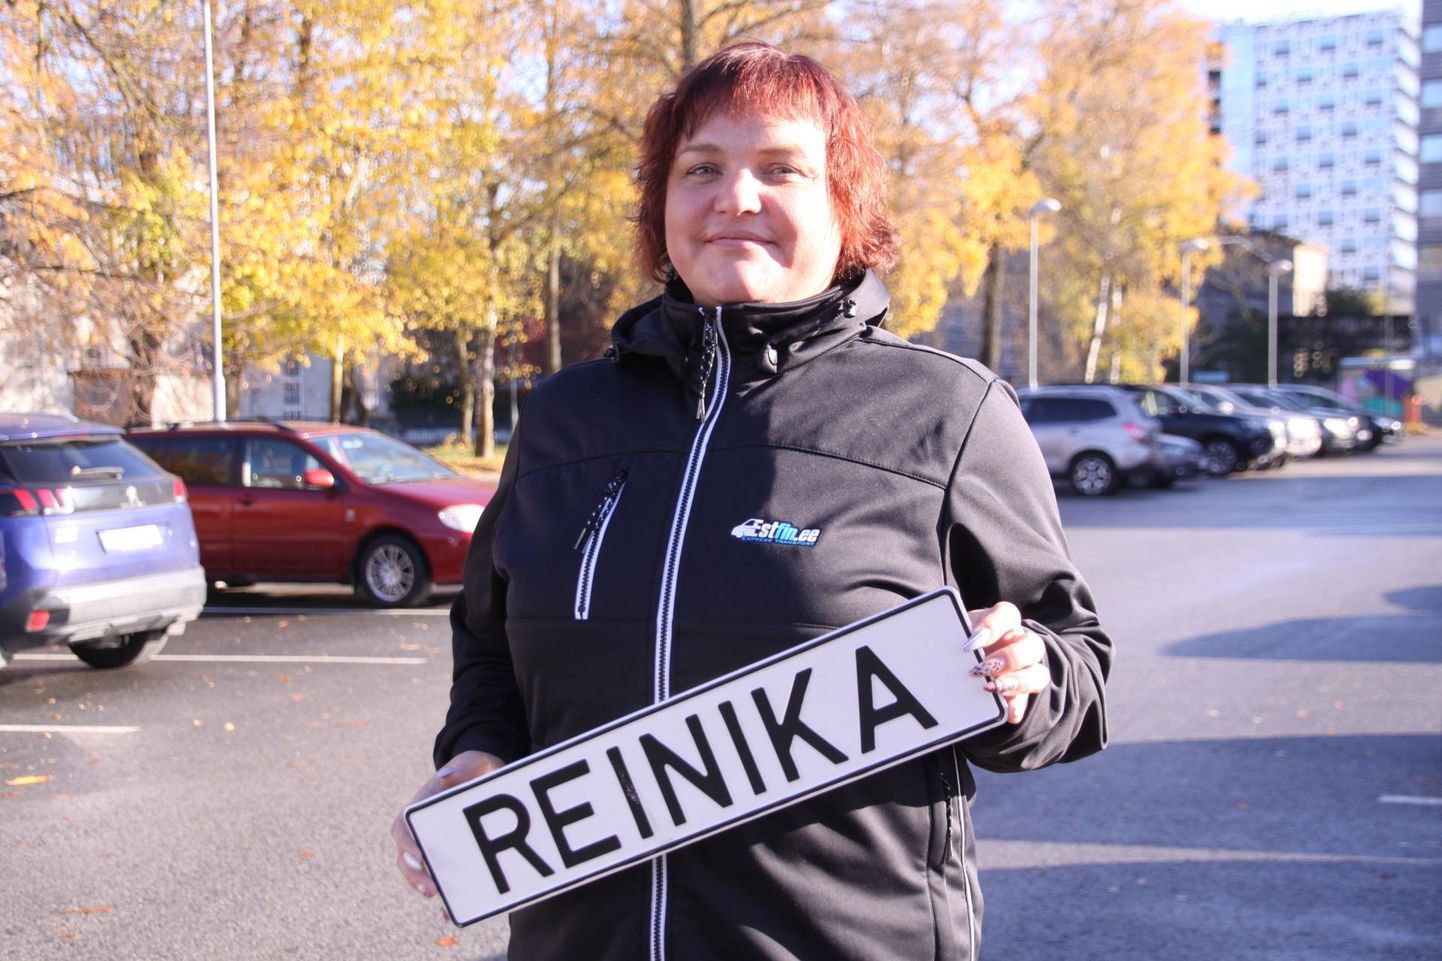 Rekkajuhi nimesildi tellis Reinika Tatter juba eelmise aasta detsembris ja oma esimesel sõidul sättis ta selle kenasti esiklaasile.